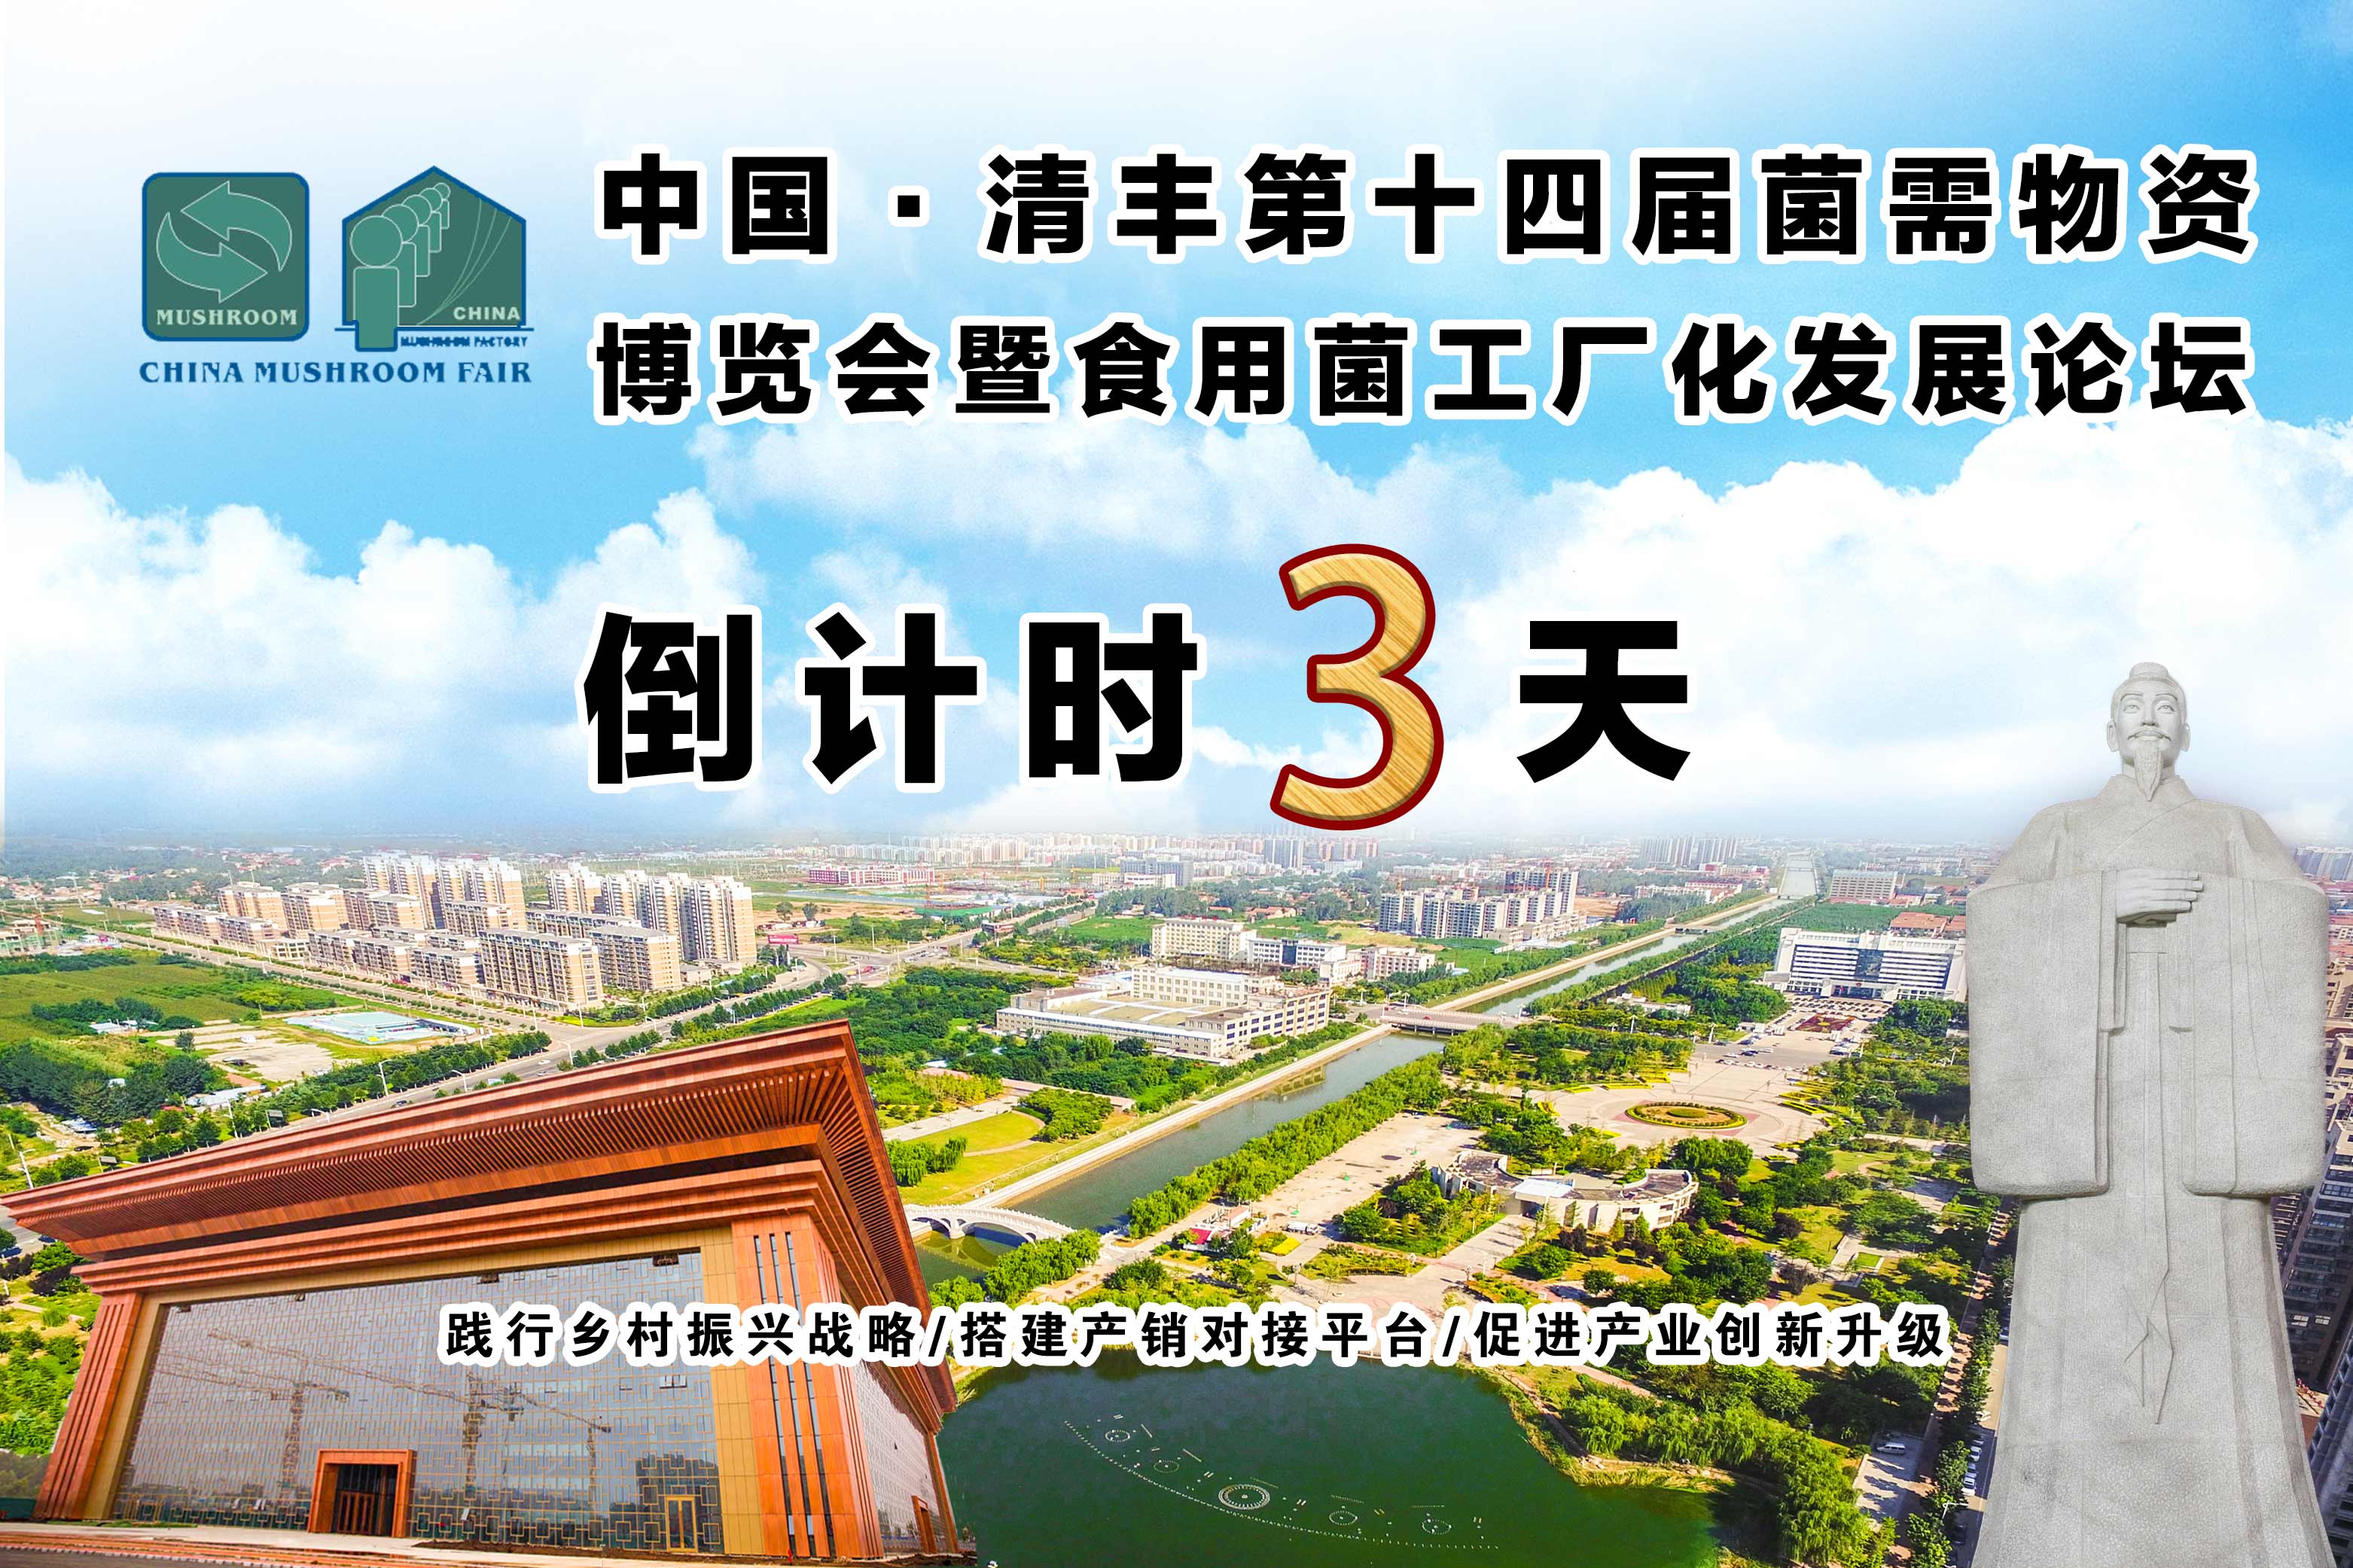 温馨提示∣中国·清丰第十四届全国菌需物资博览会路线攻略及天气指南